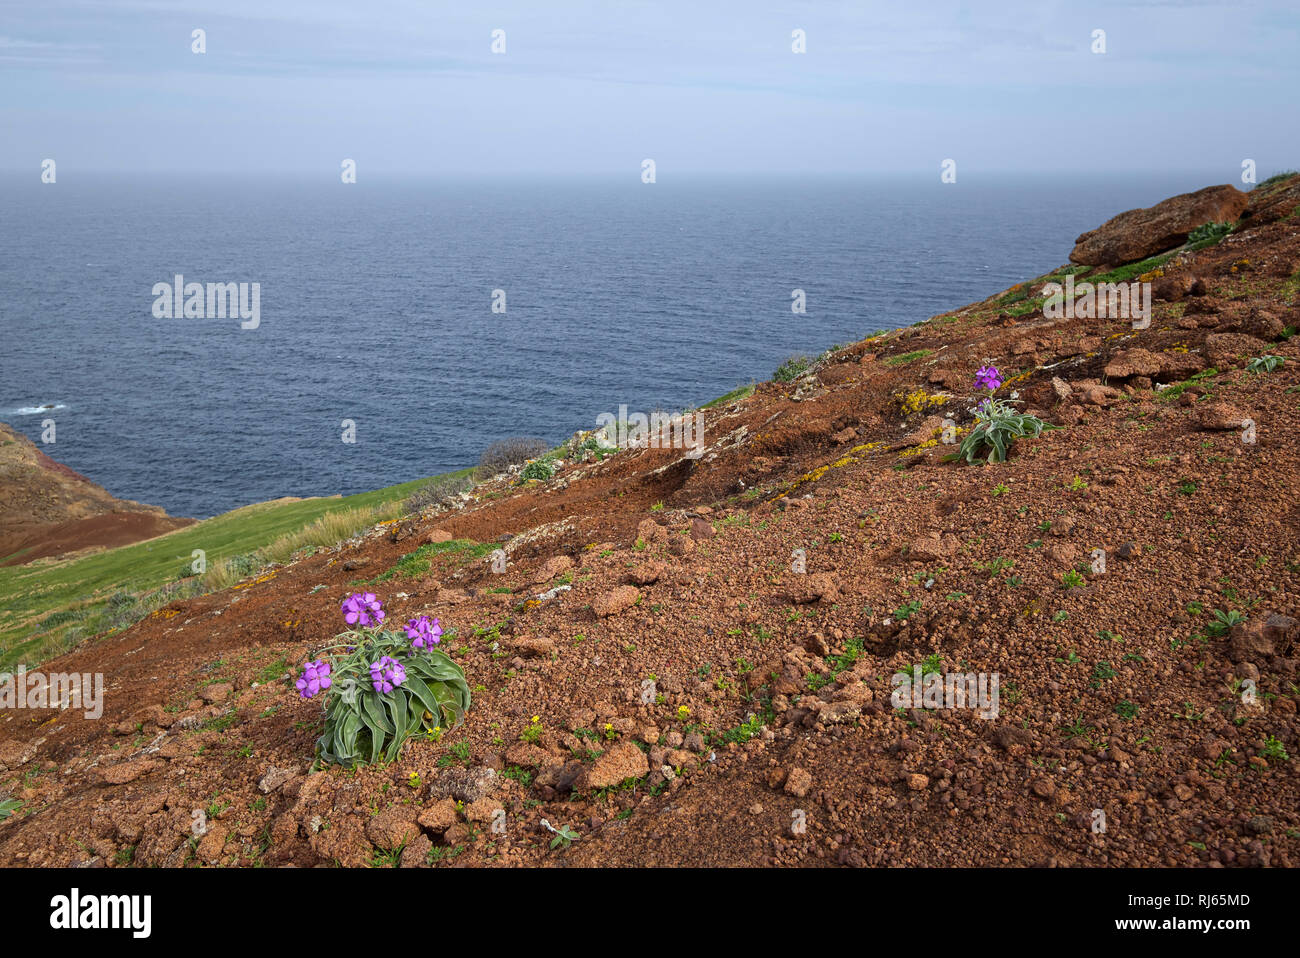 Portugal, Madeira, Meer, Blumen, blühen, vulkanisch Stock Photo